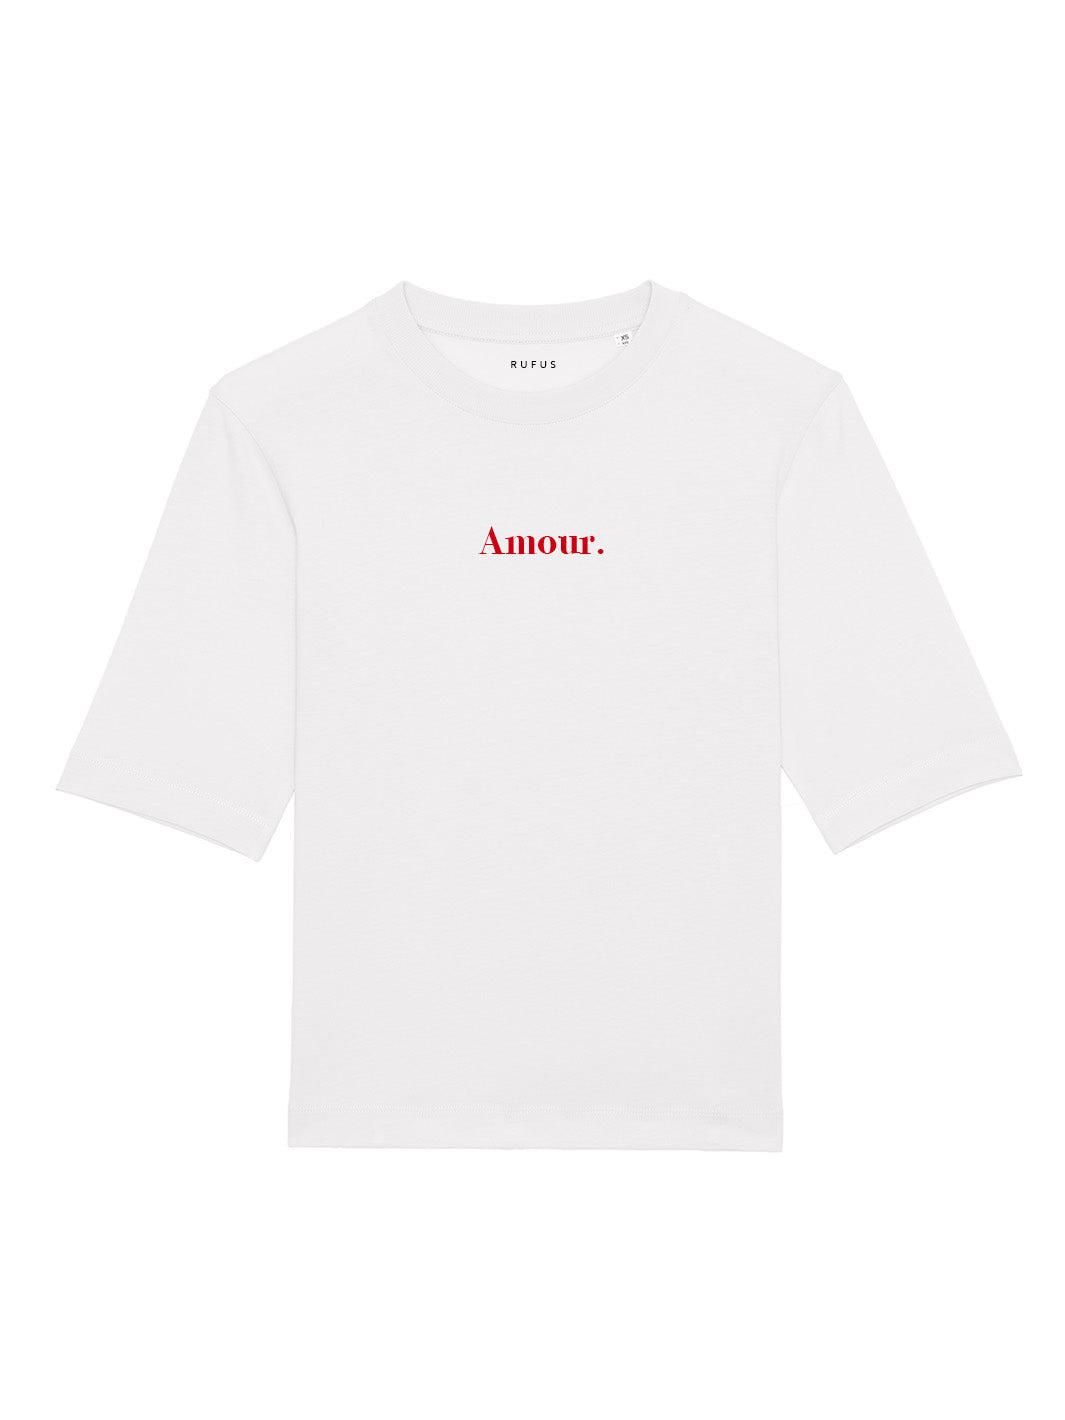 L'Essentiel "Amour." blanc imprimé rouge-Rufus Paris